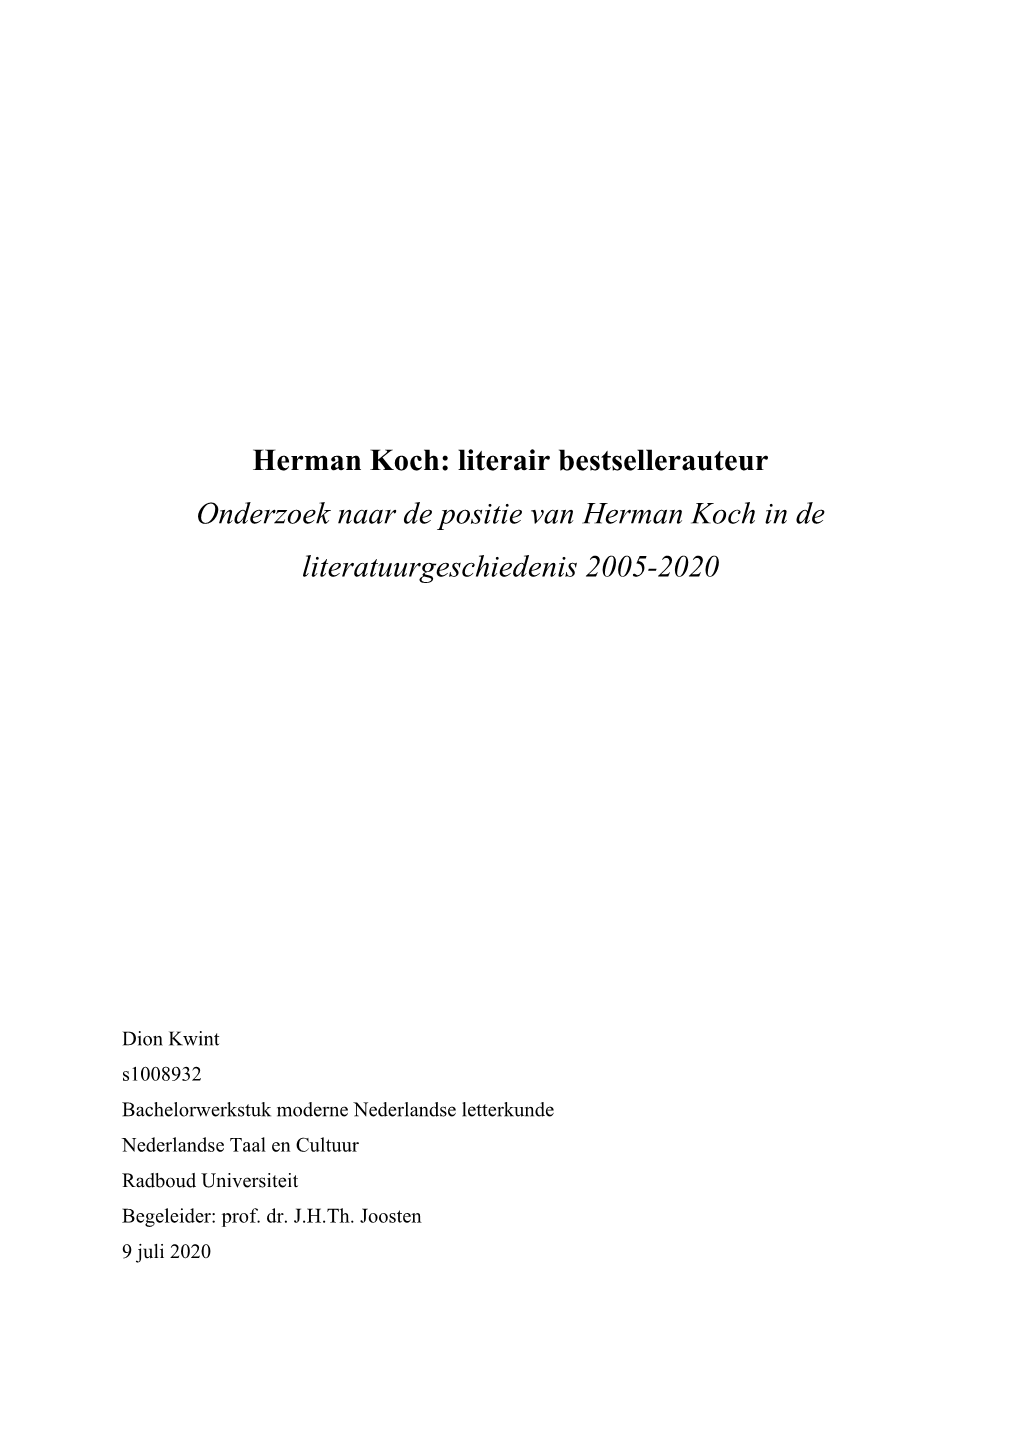 Herman Koch: Literair Bestsellerauteur Onderzoek Naar De Positie Van Herman Koch in De Literatuurgeschiedenis 2005-2020